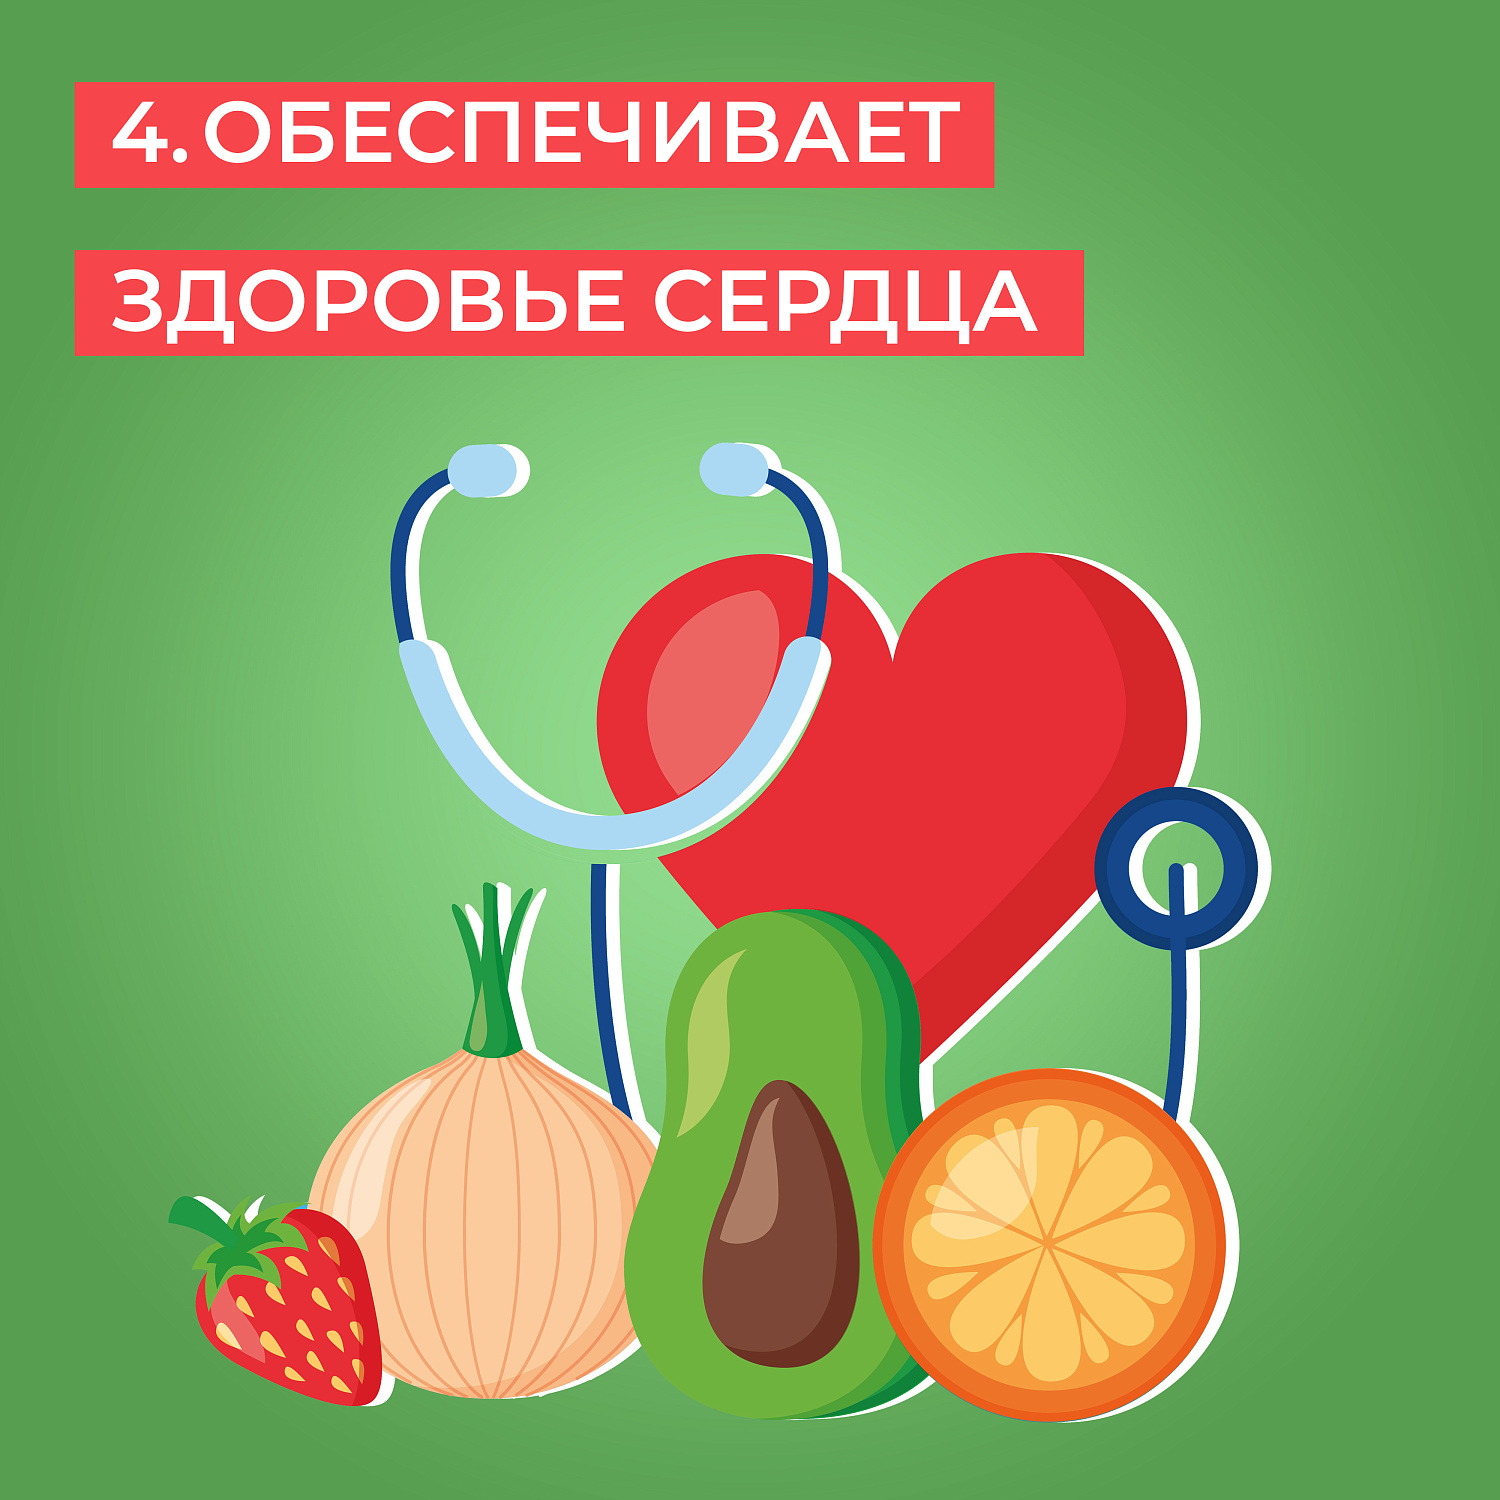 Польза потребления овощей и фруктов